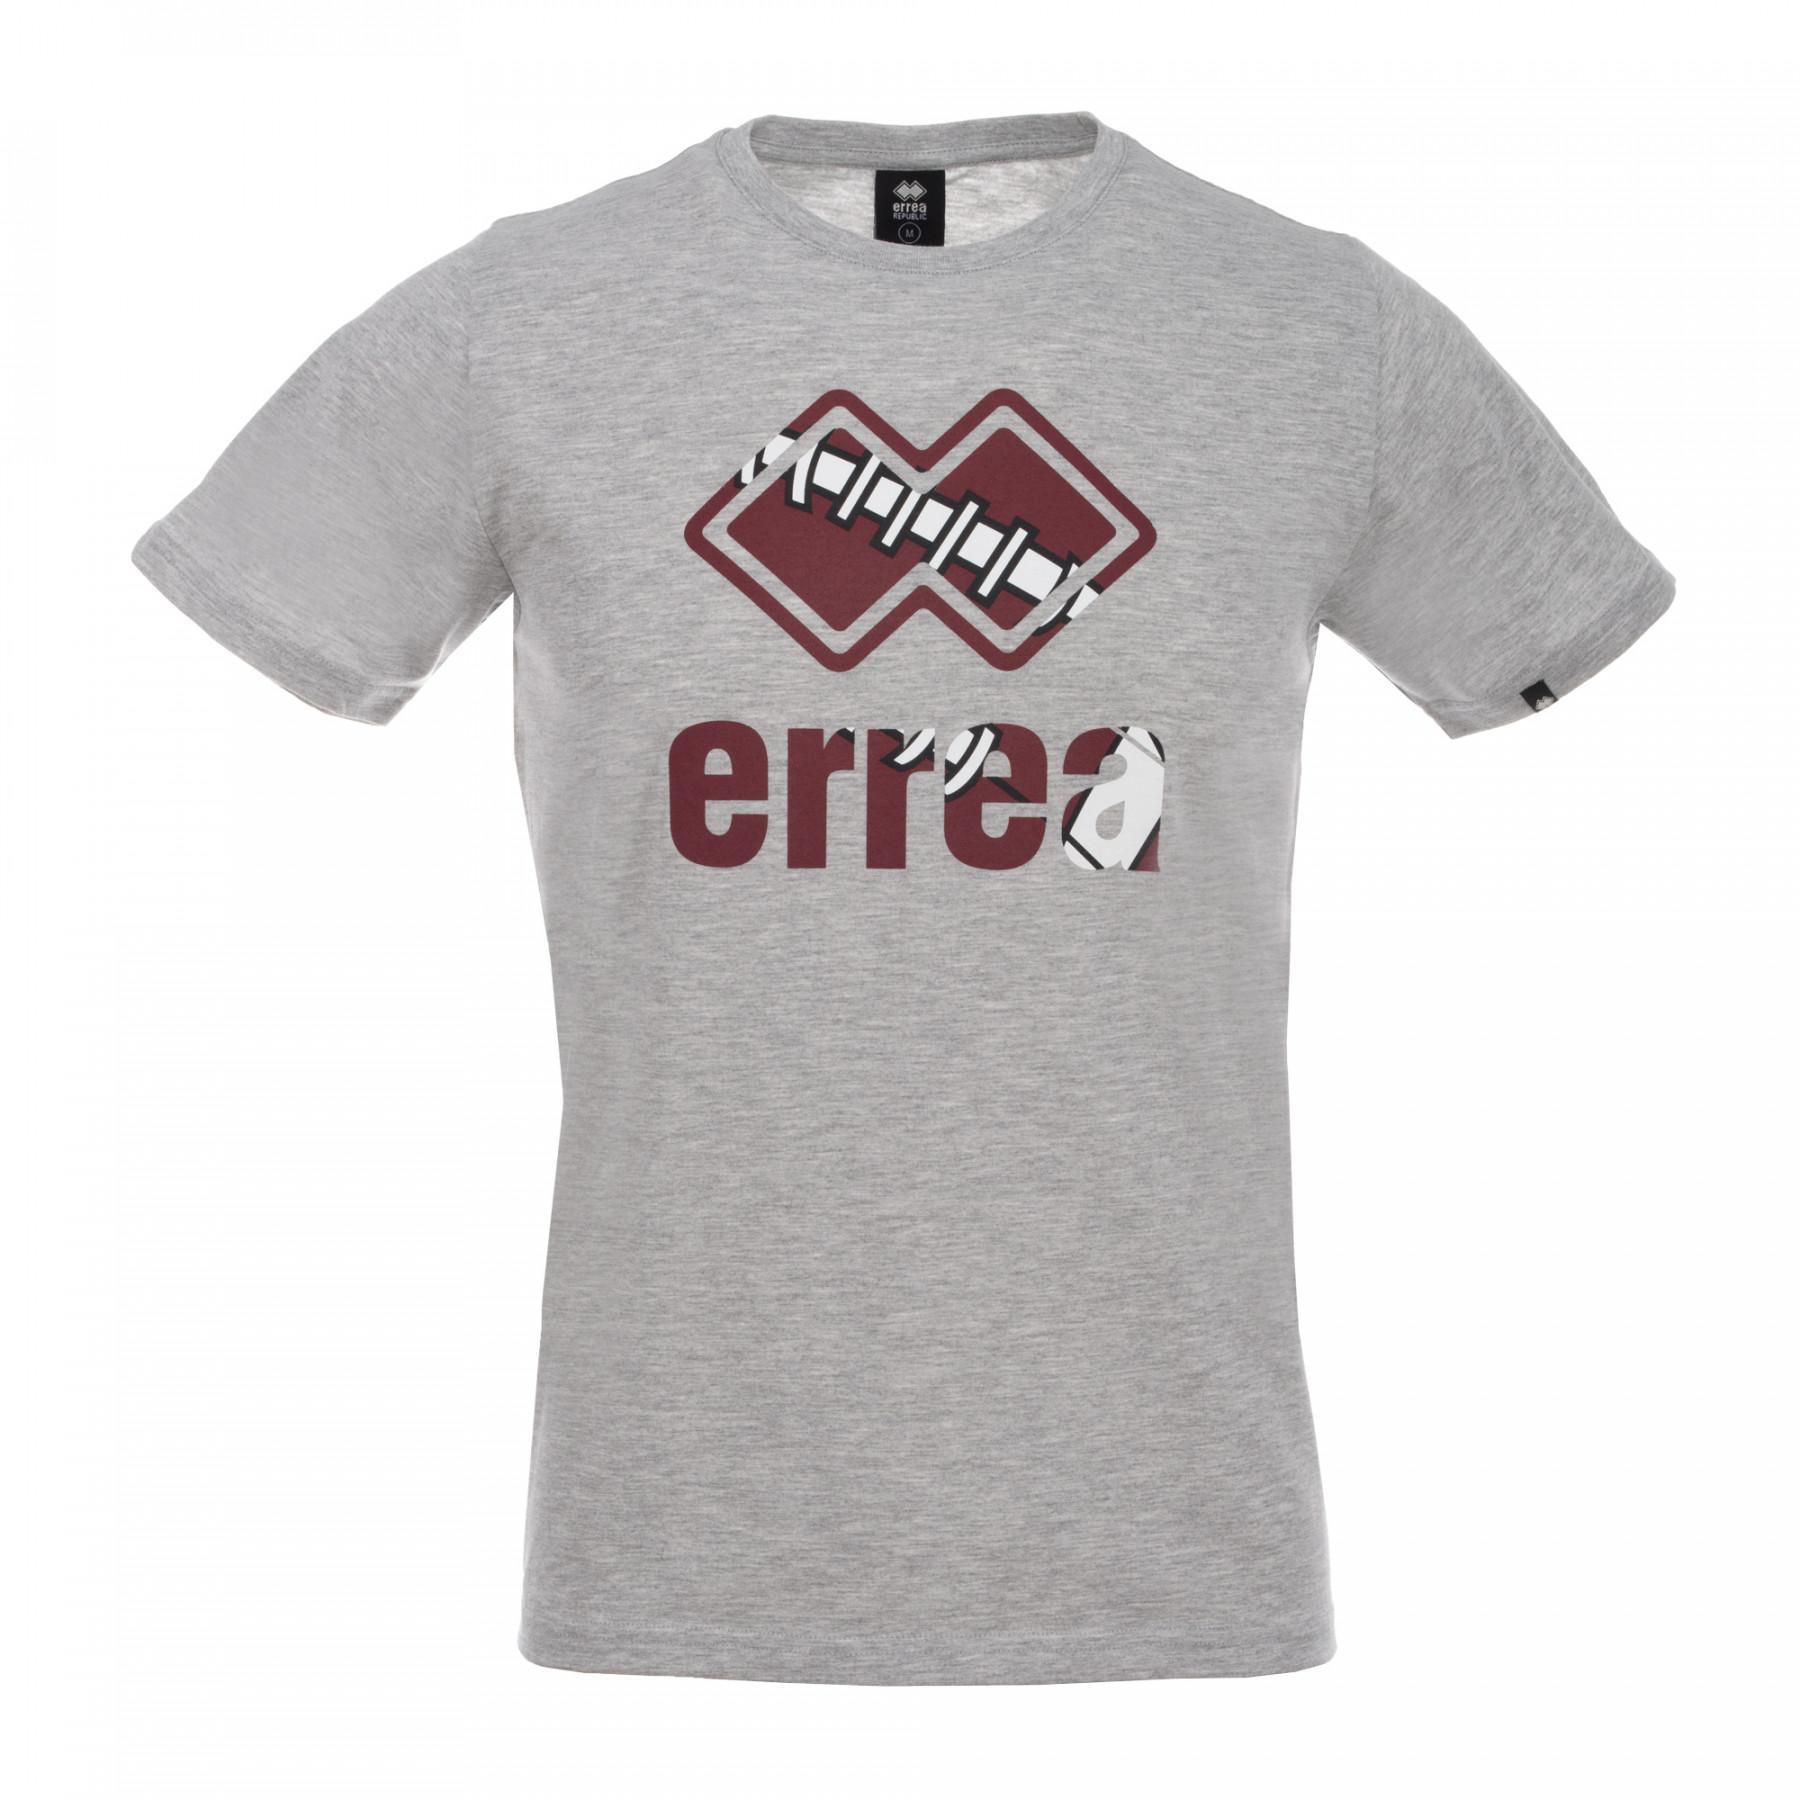 T-shirt Errea essential graphic ad